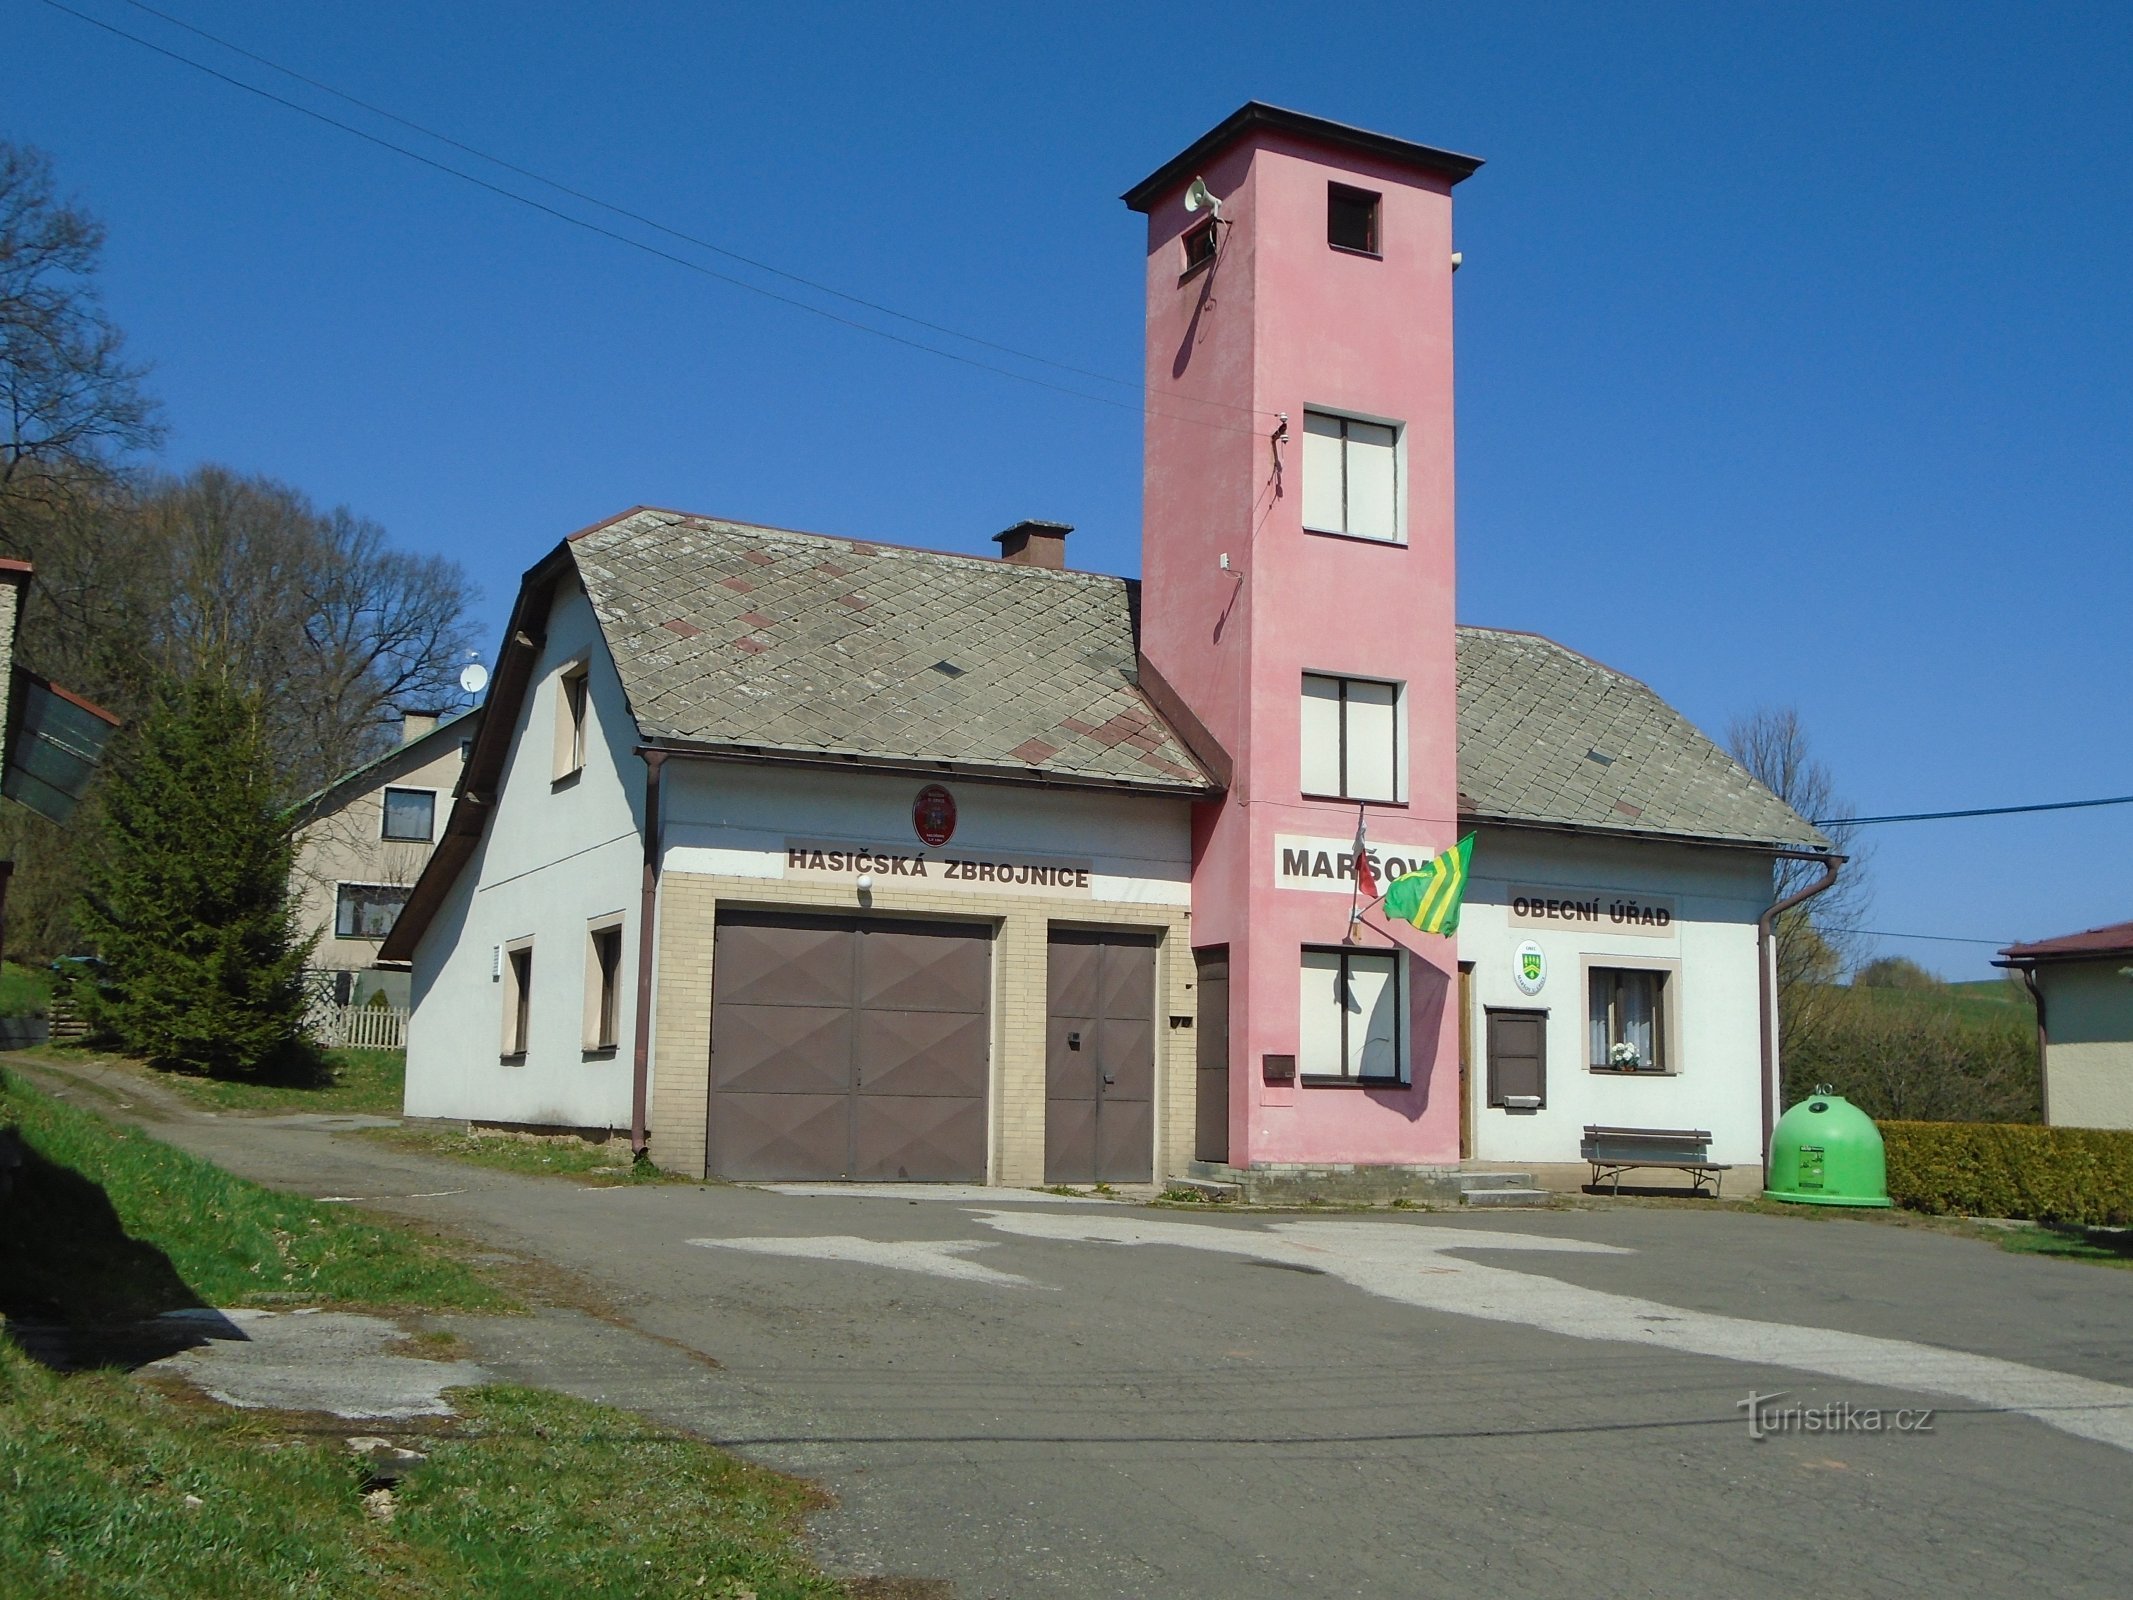 市役所 (Maršov u Úpice)